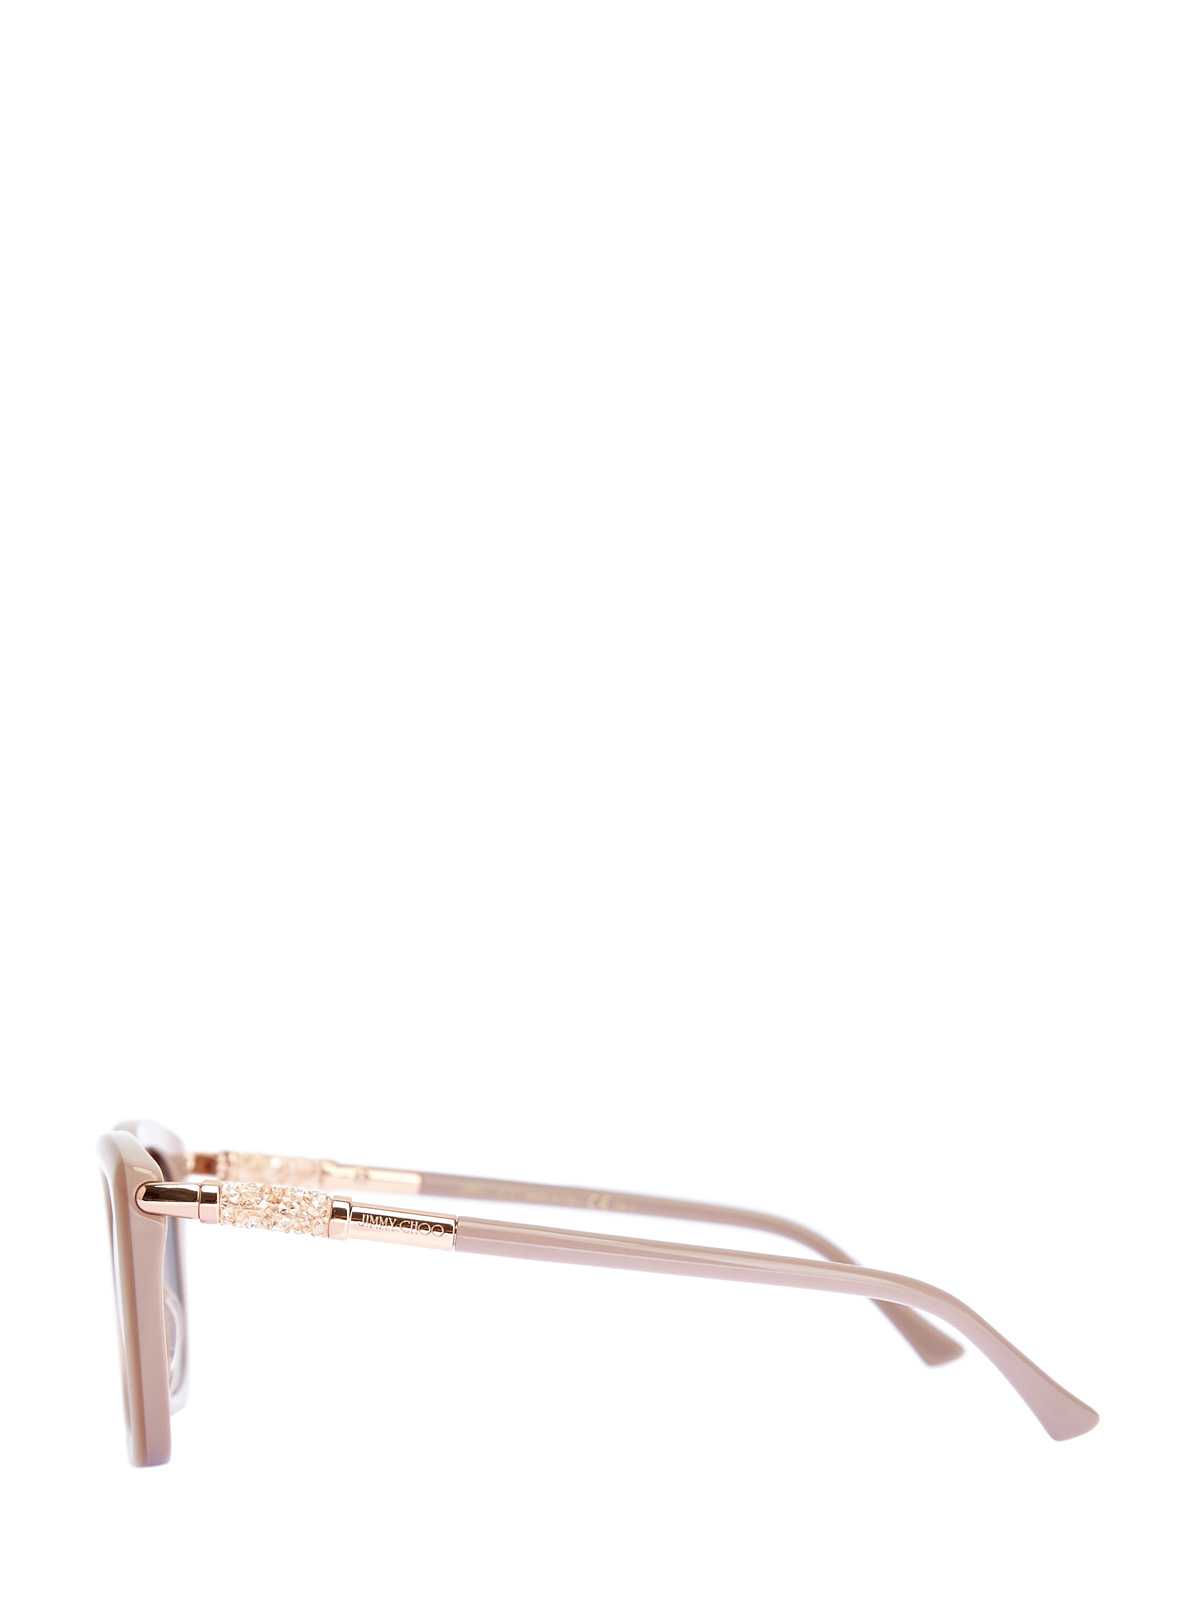 Солнцезащитные очки Adahs с мерцающей отделкой JIMMY CHOO  (sunglasses), цвет бежевый, размер S;M;L - фото 3